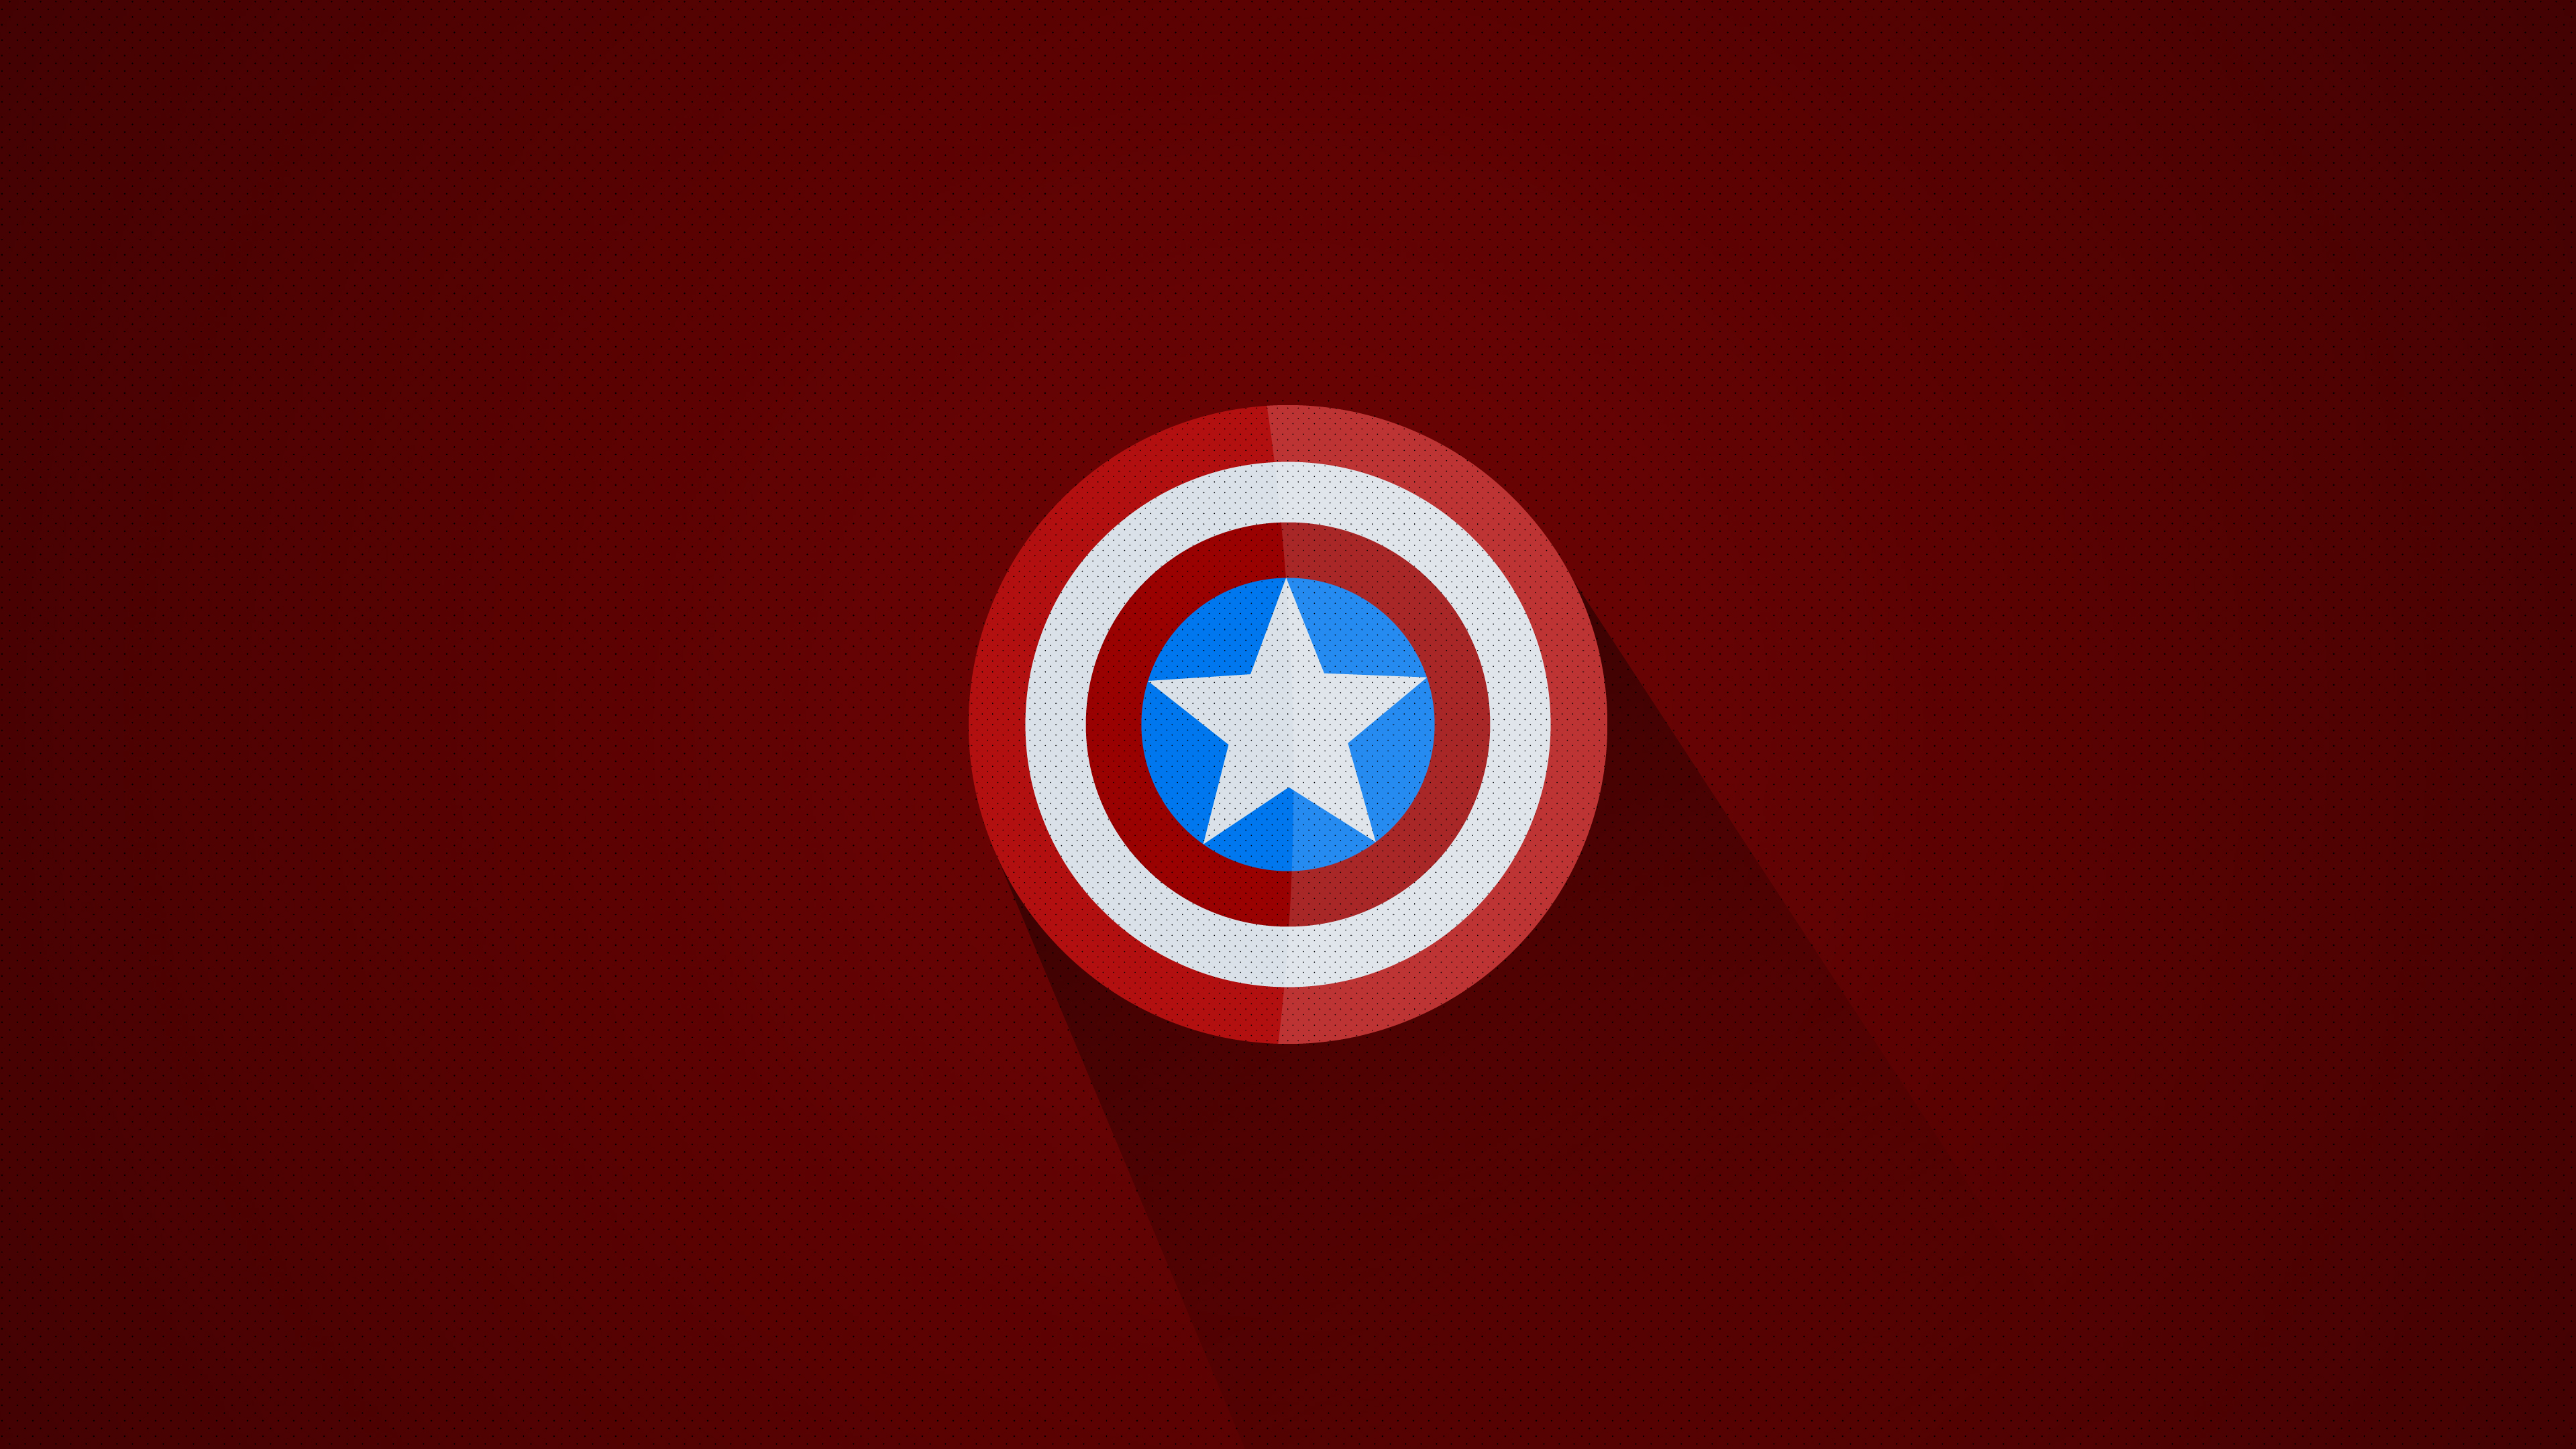 Captain America Shield 3840x2160